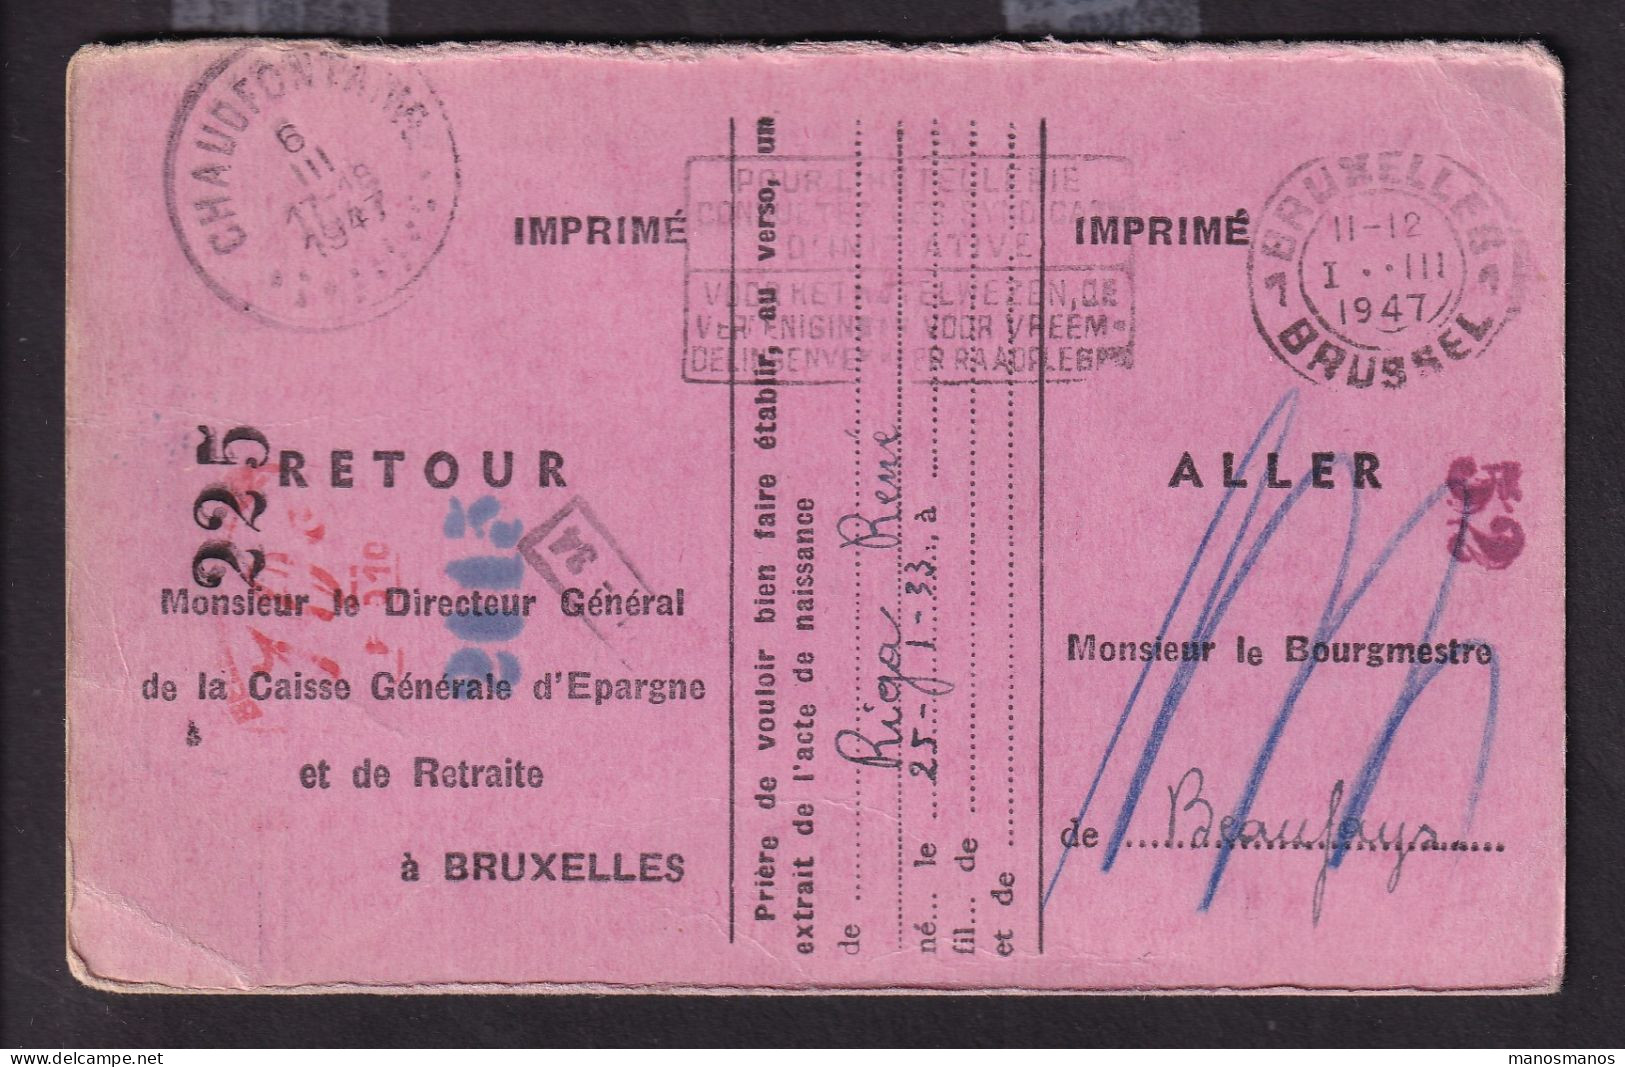 DDFF 549 -- BEAUFAYS - Carte De Caisse D'Epargne Postale/Postspaarkaskaart 1947 - TB Cachet Administration Communale - Franchise